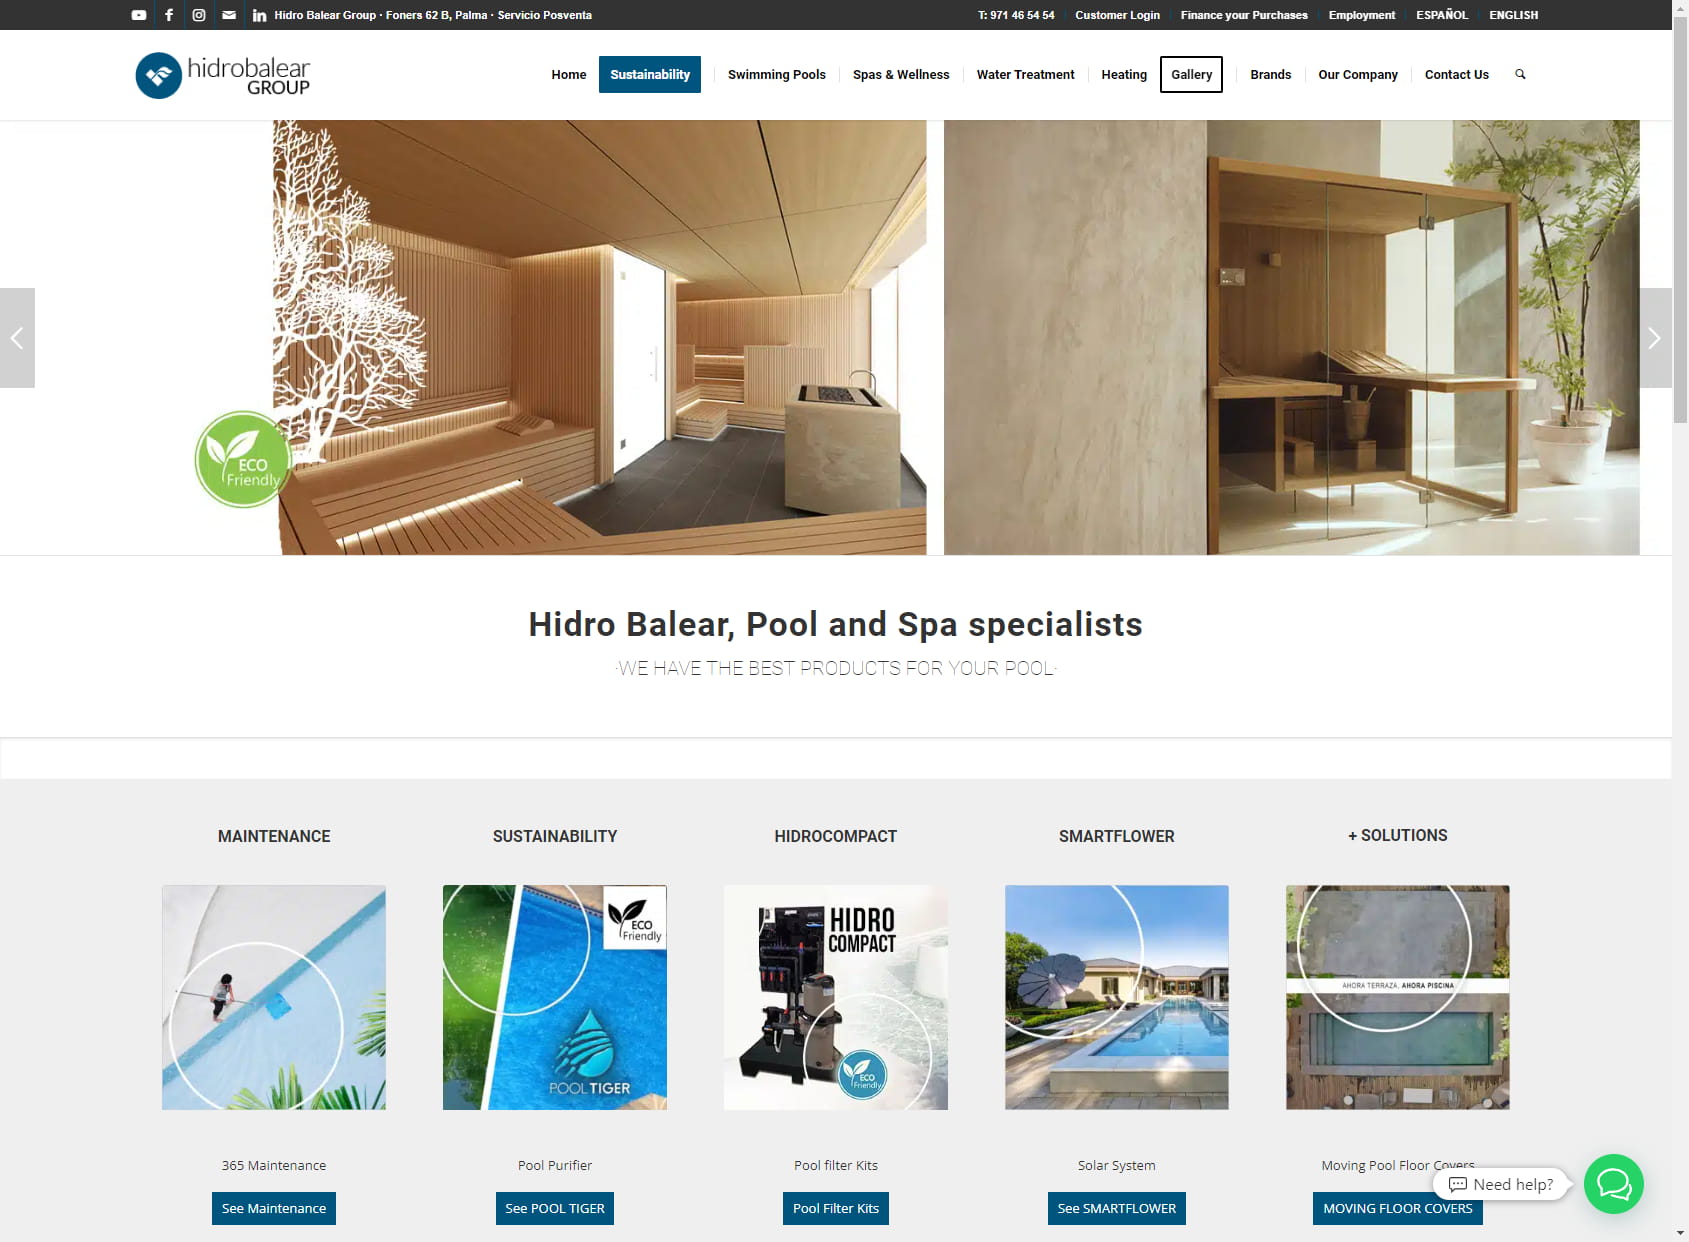 Hidro Balear Group - Especialistas en Piscinas, Spas y Tratamiento del Agua